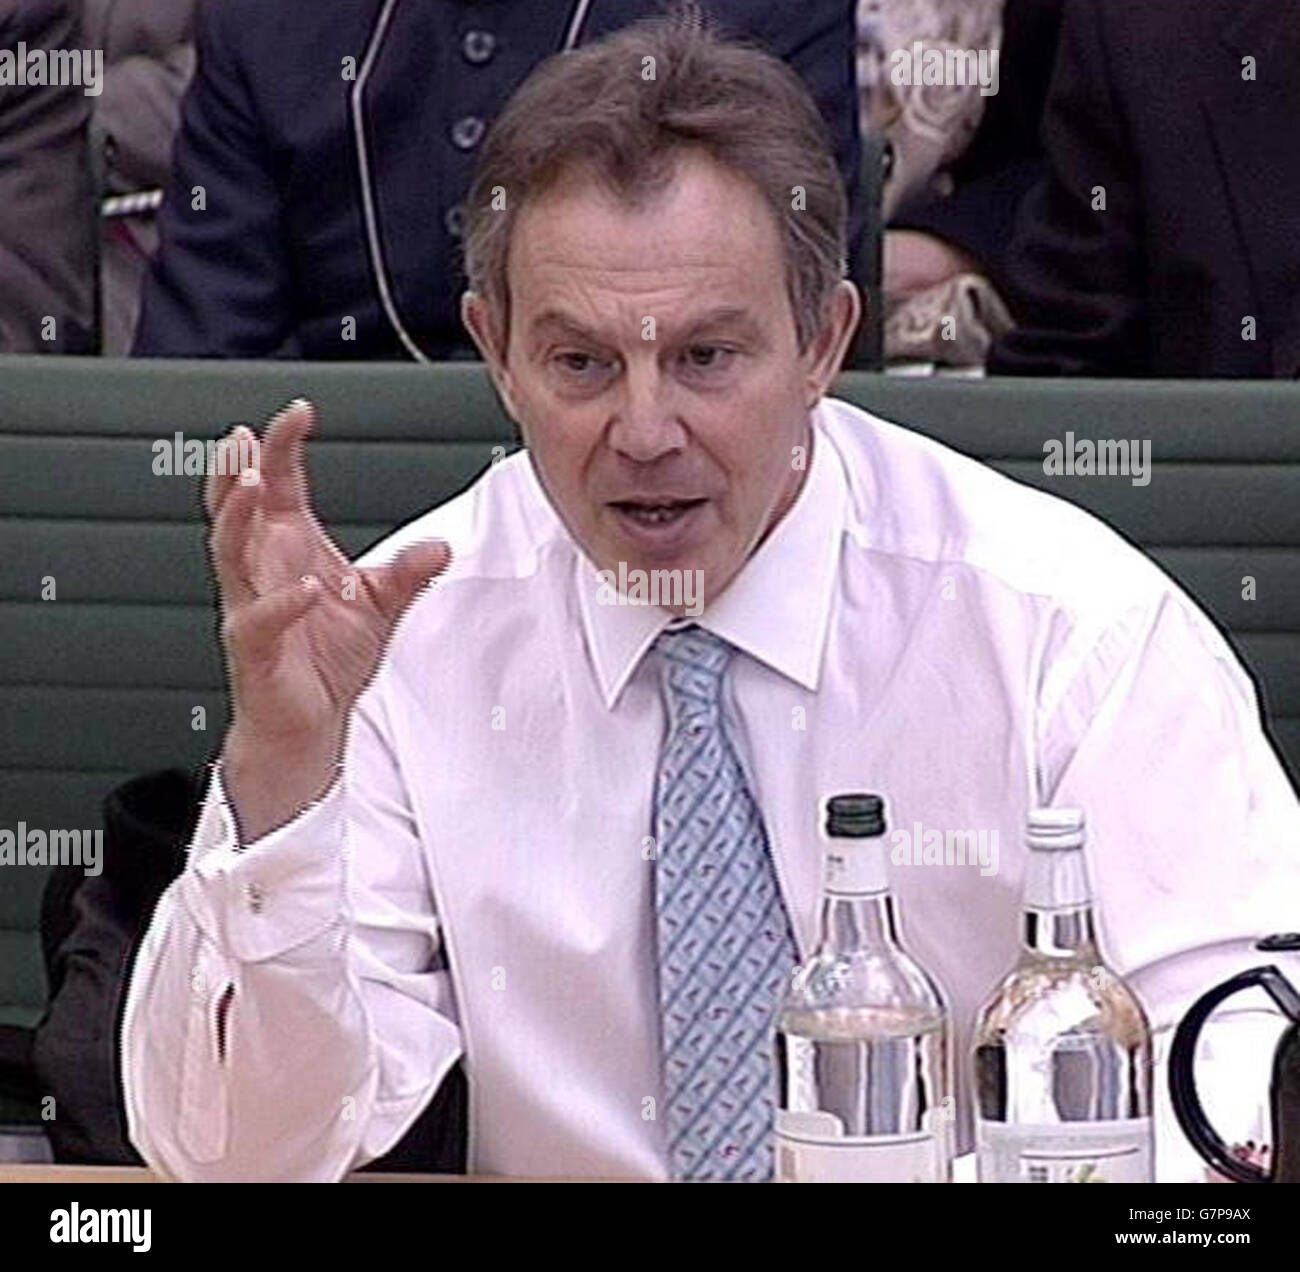 Der britische Premierminister Tony Blair gibt dem Verbindungsausschuss des Unterhauses in Westminster Beweise. Während zweieinhalb Stunden Befragung von hochrangigen Abgeordneten wurde er über die jüngsten Wahlen im Irak, im Iran und die öffentlichen Ausgaben befragt. Stockfoto